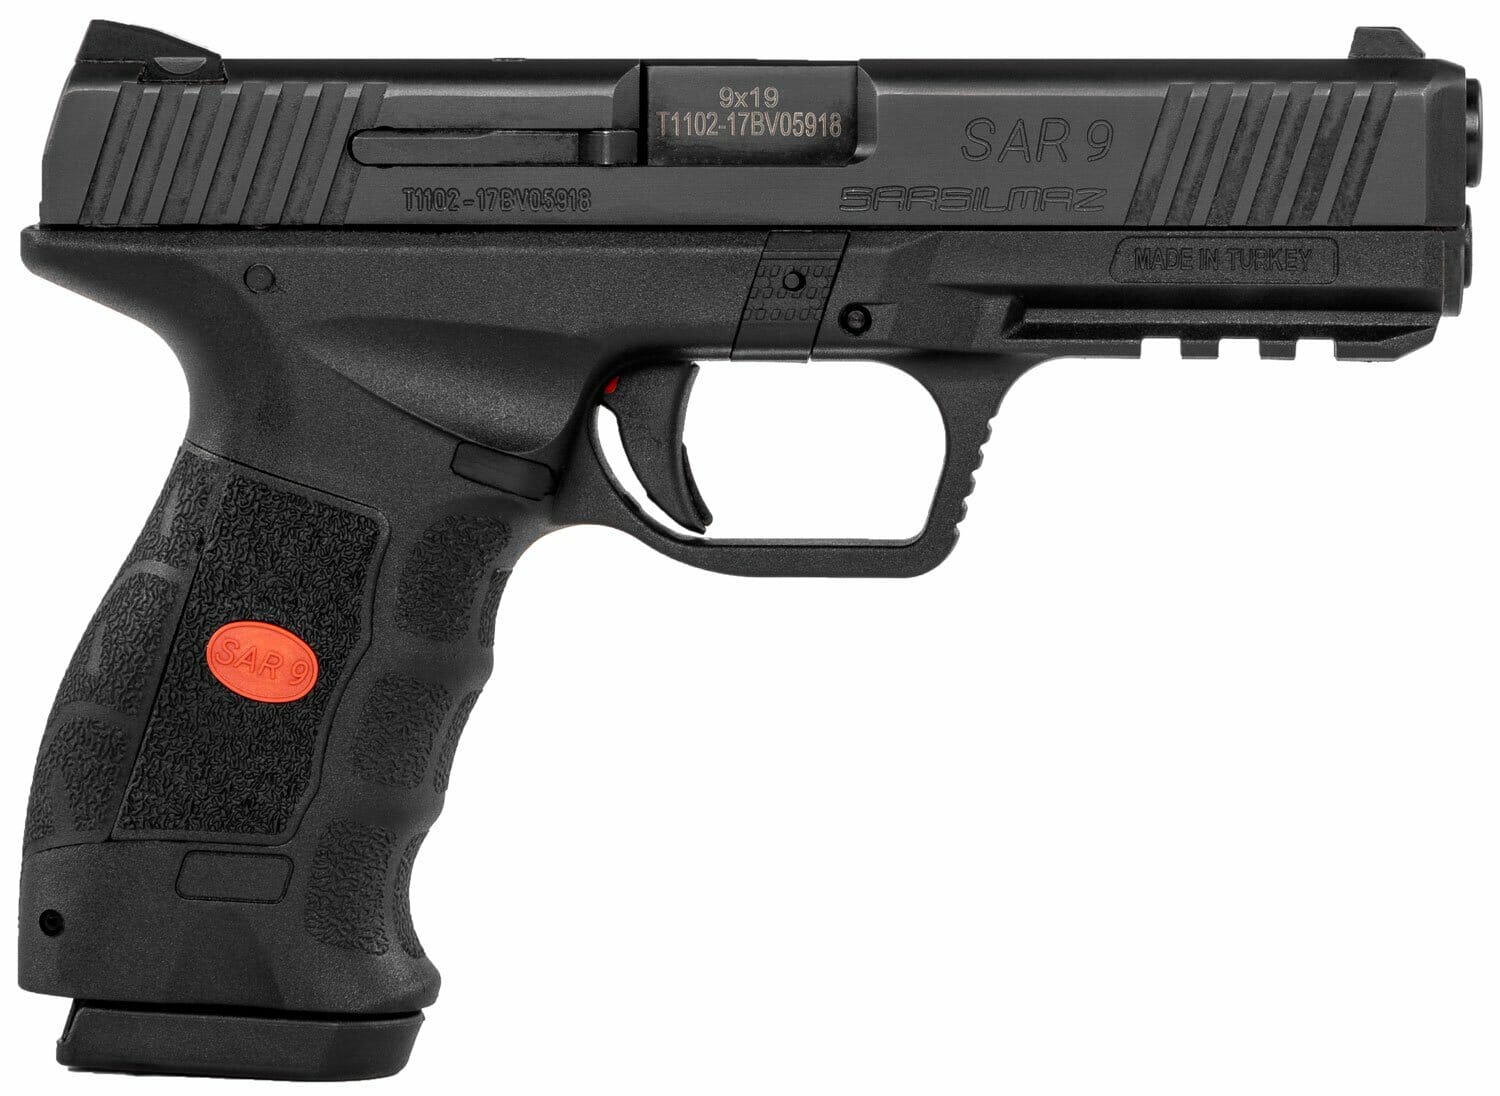 USA SAR9 handgun